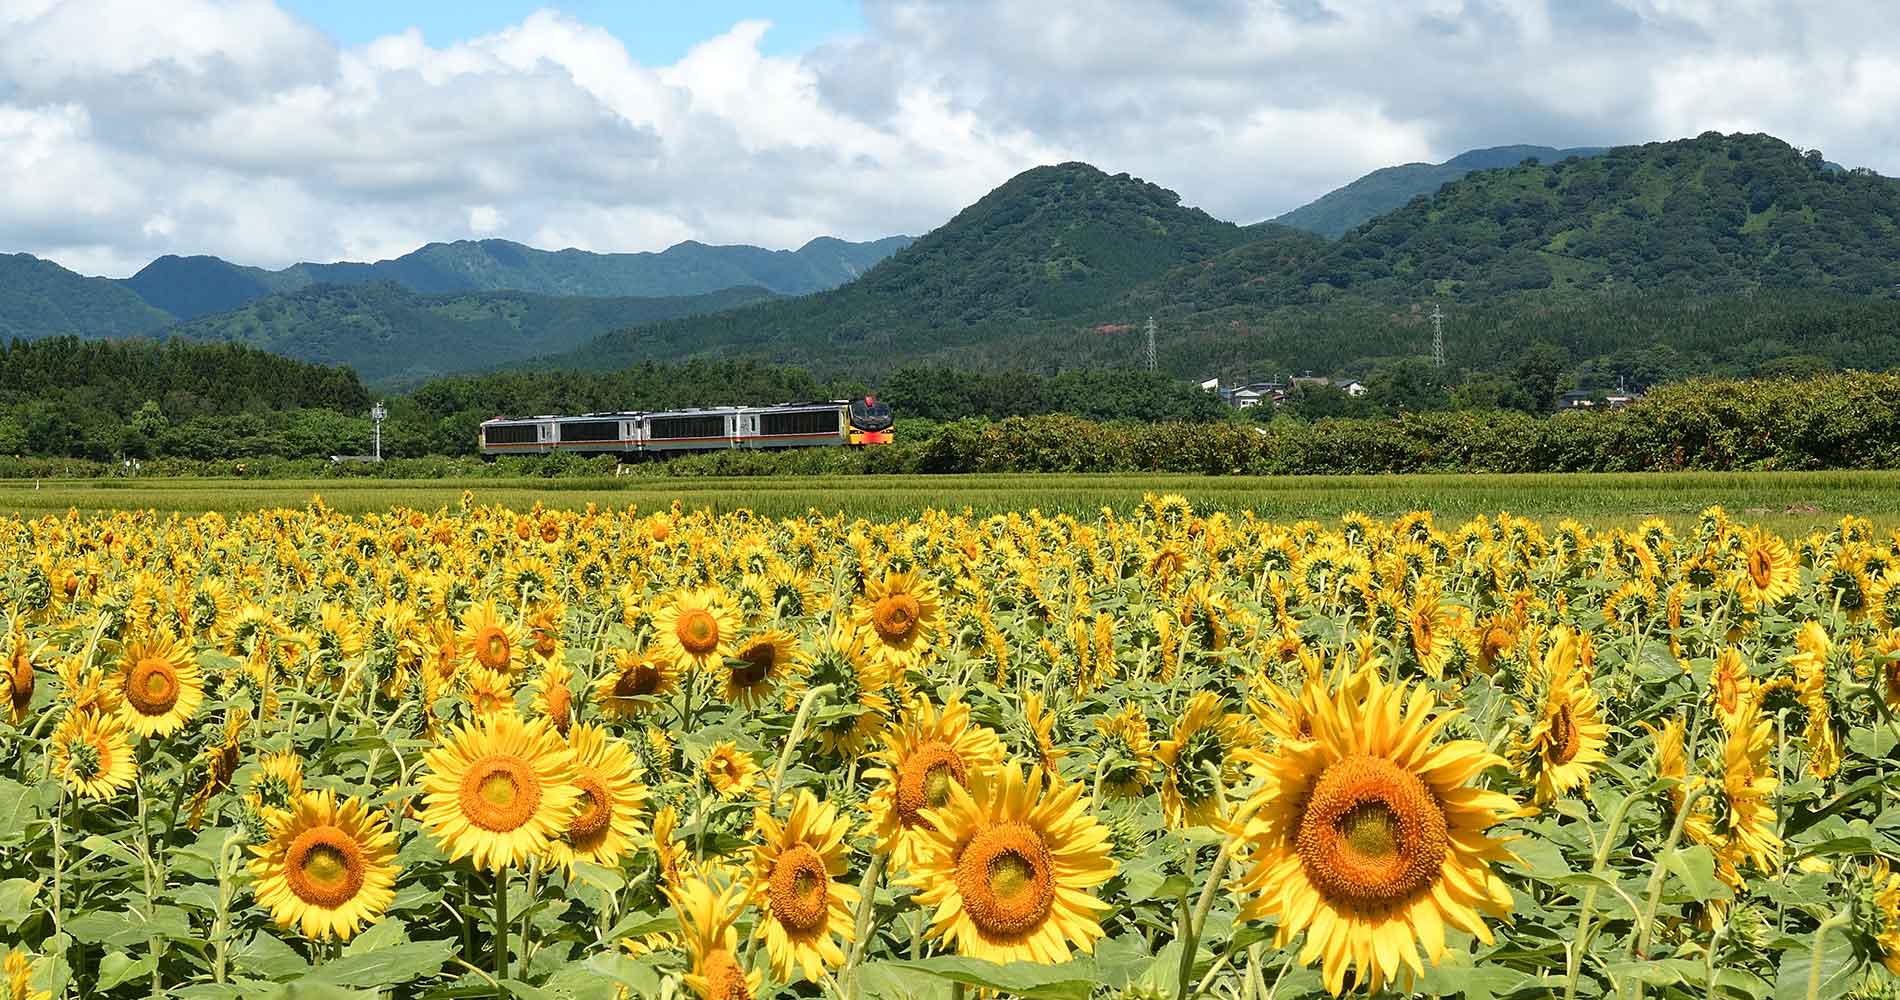 The Resort Shirakami passes by fields of sunflowers.